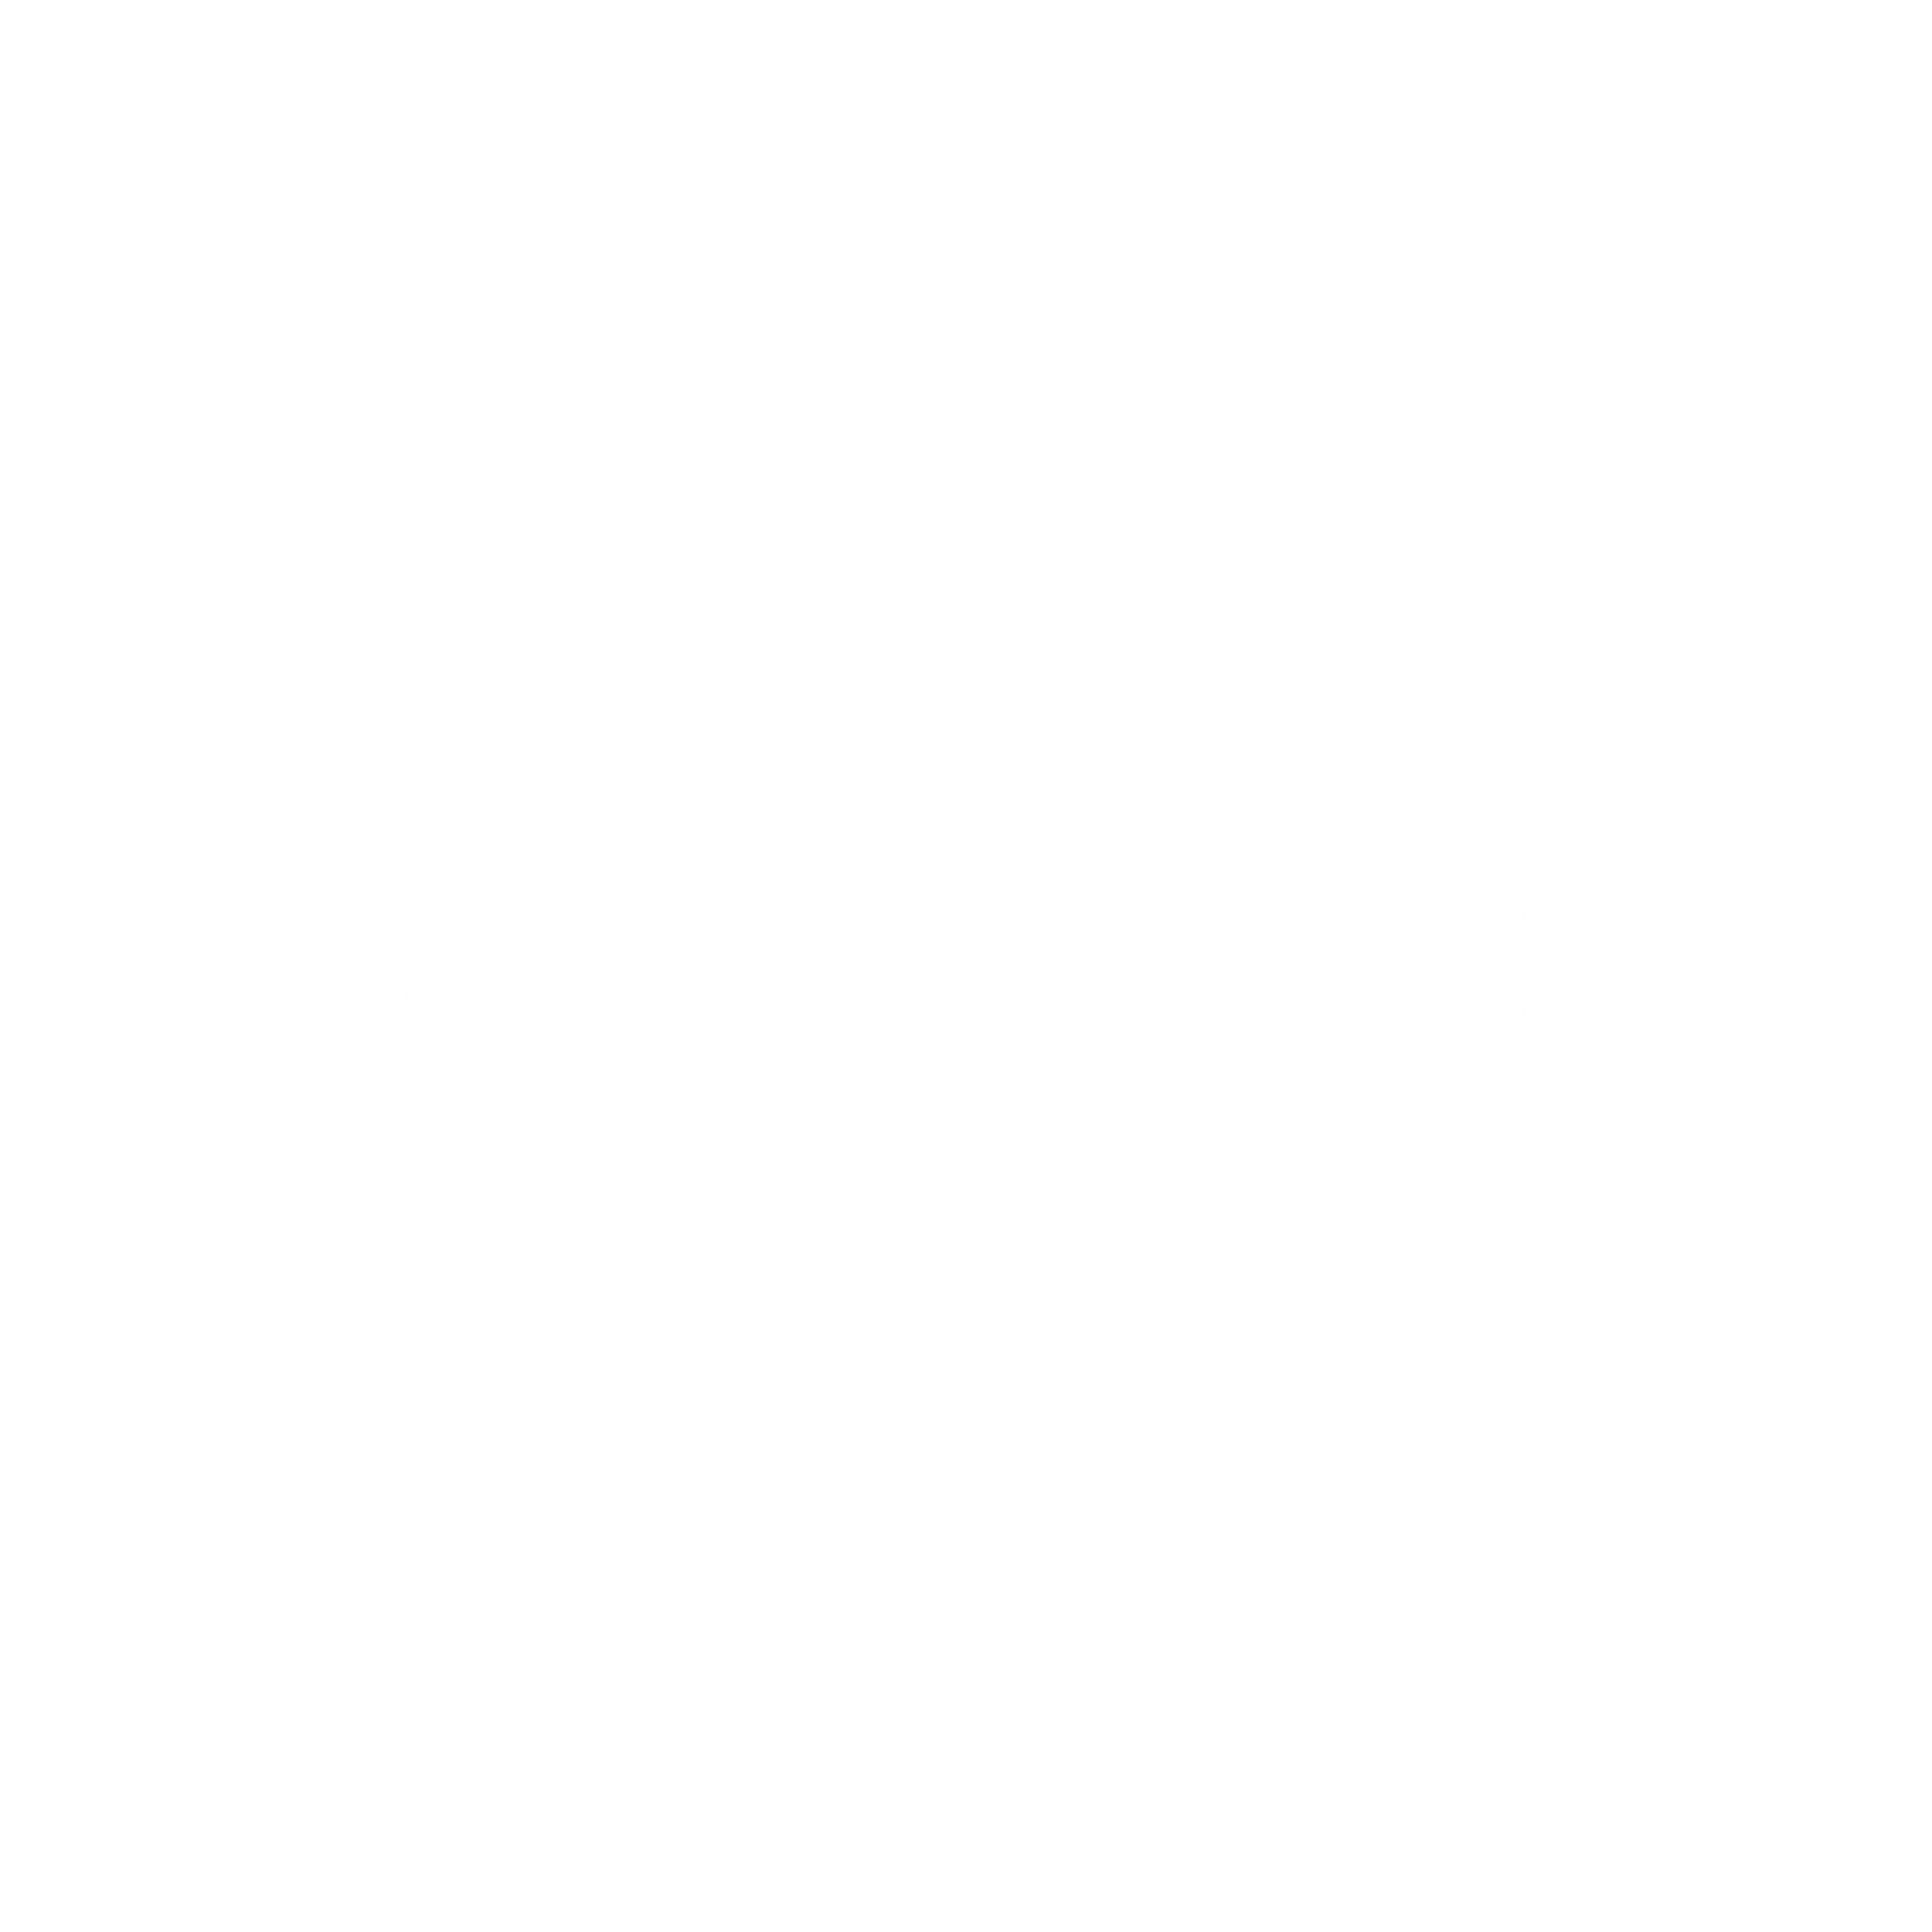 Logo Skype hitam dan putih PNG Gambar berkualitas tinggi